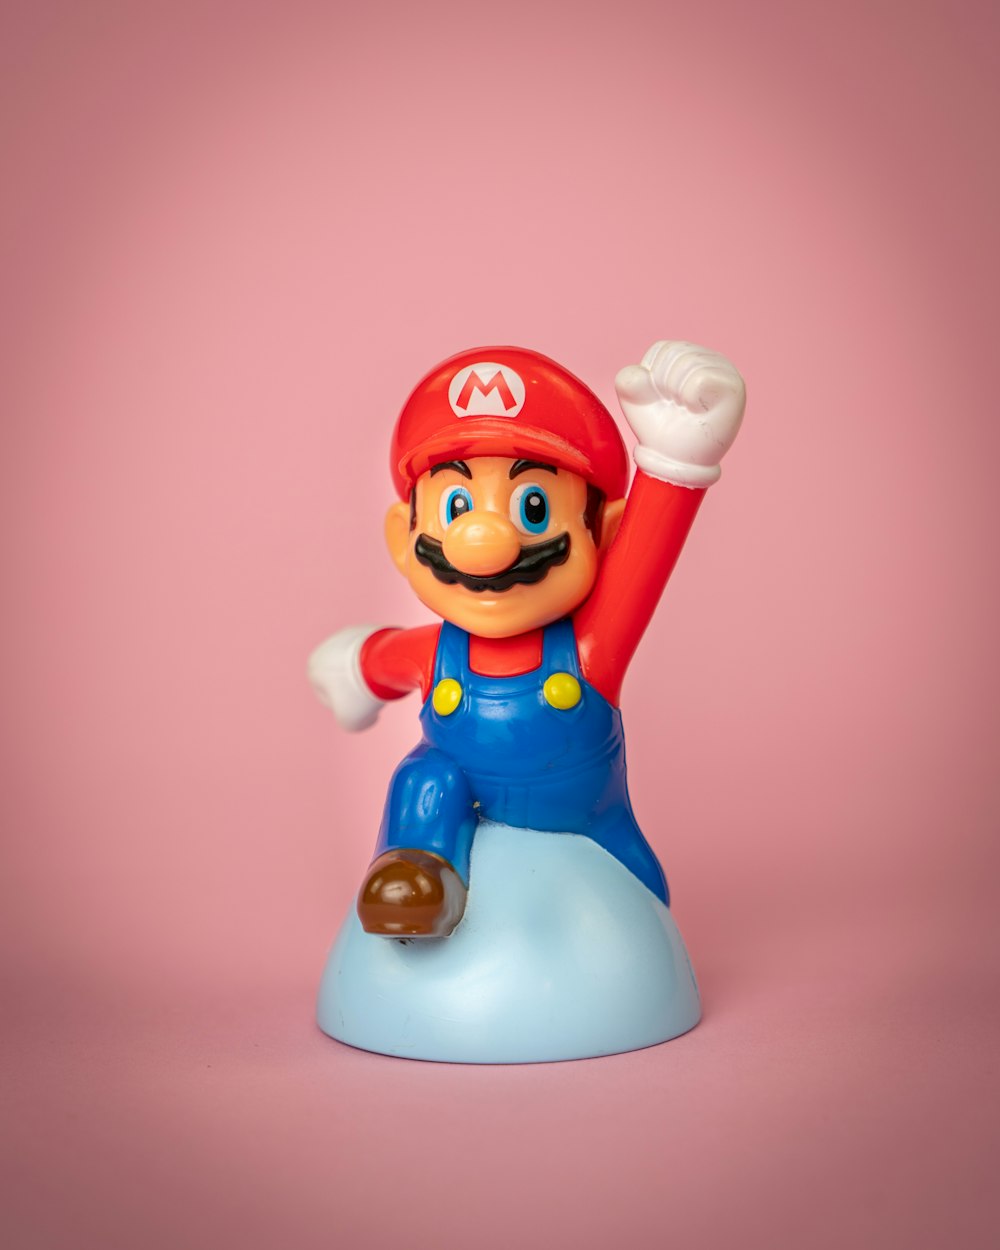 Eine Spielzeugfigur von Mario auf einem blauen Objekt